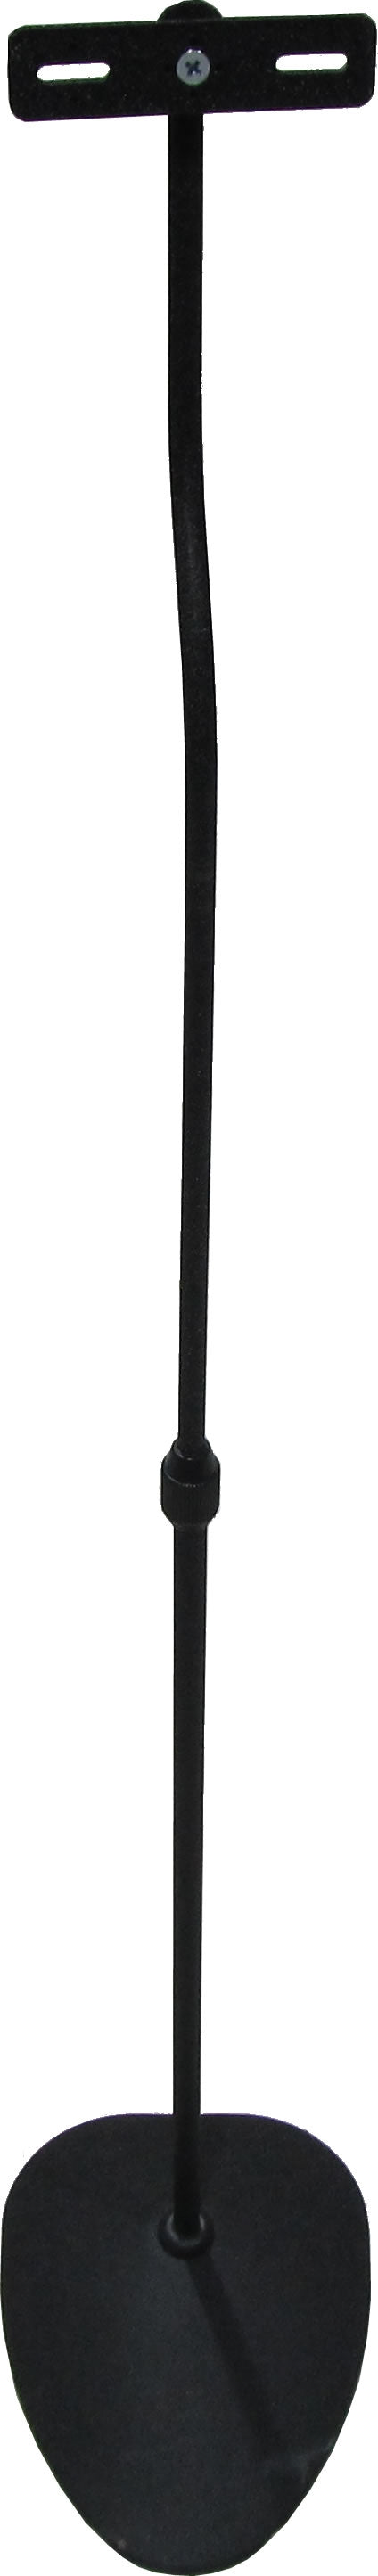 96-4000-01 Adjustable Height Speaker Floor Stand